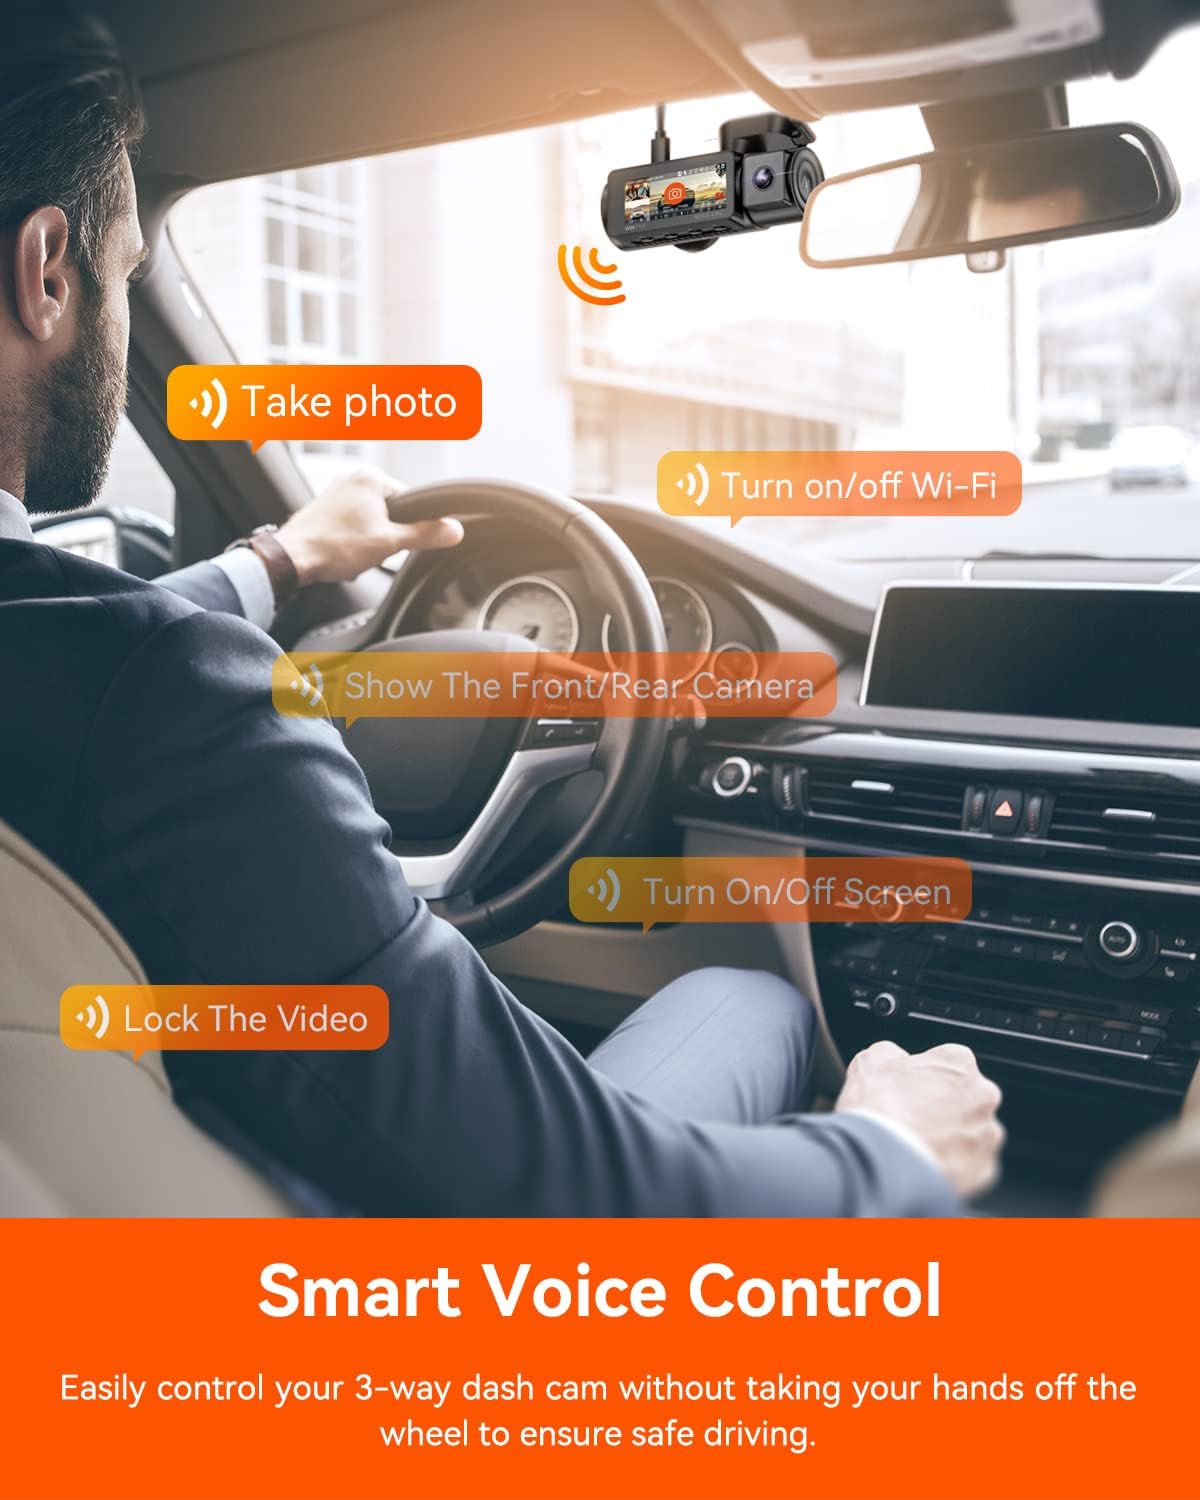 Vantrue Nexus 5 (N5) 4-Channel Voice-Controlled Smart Dash Cam